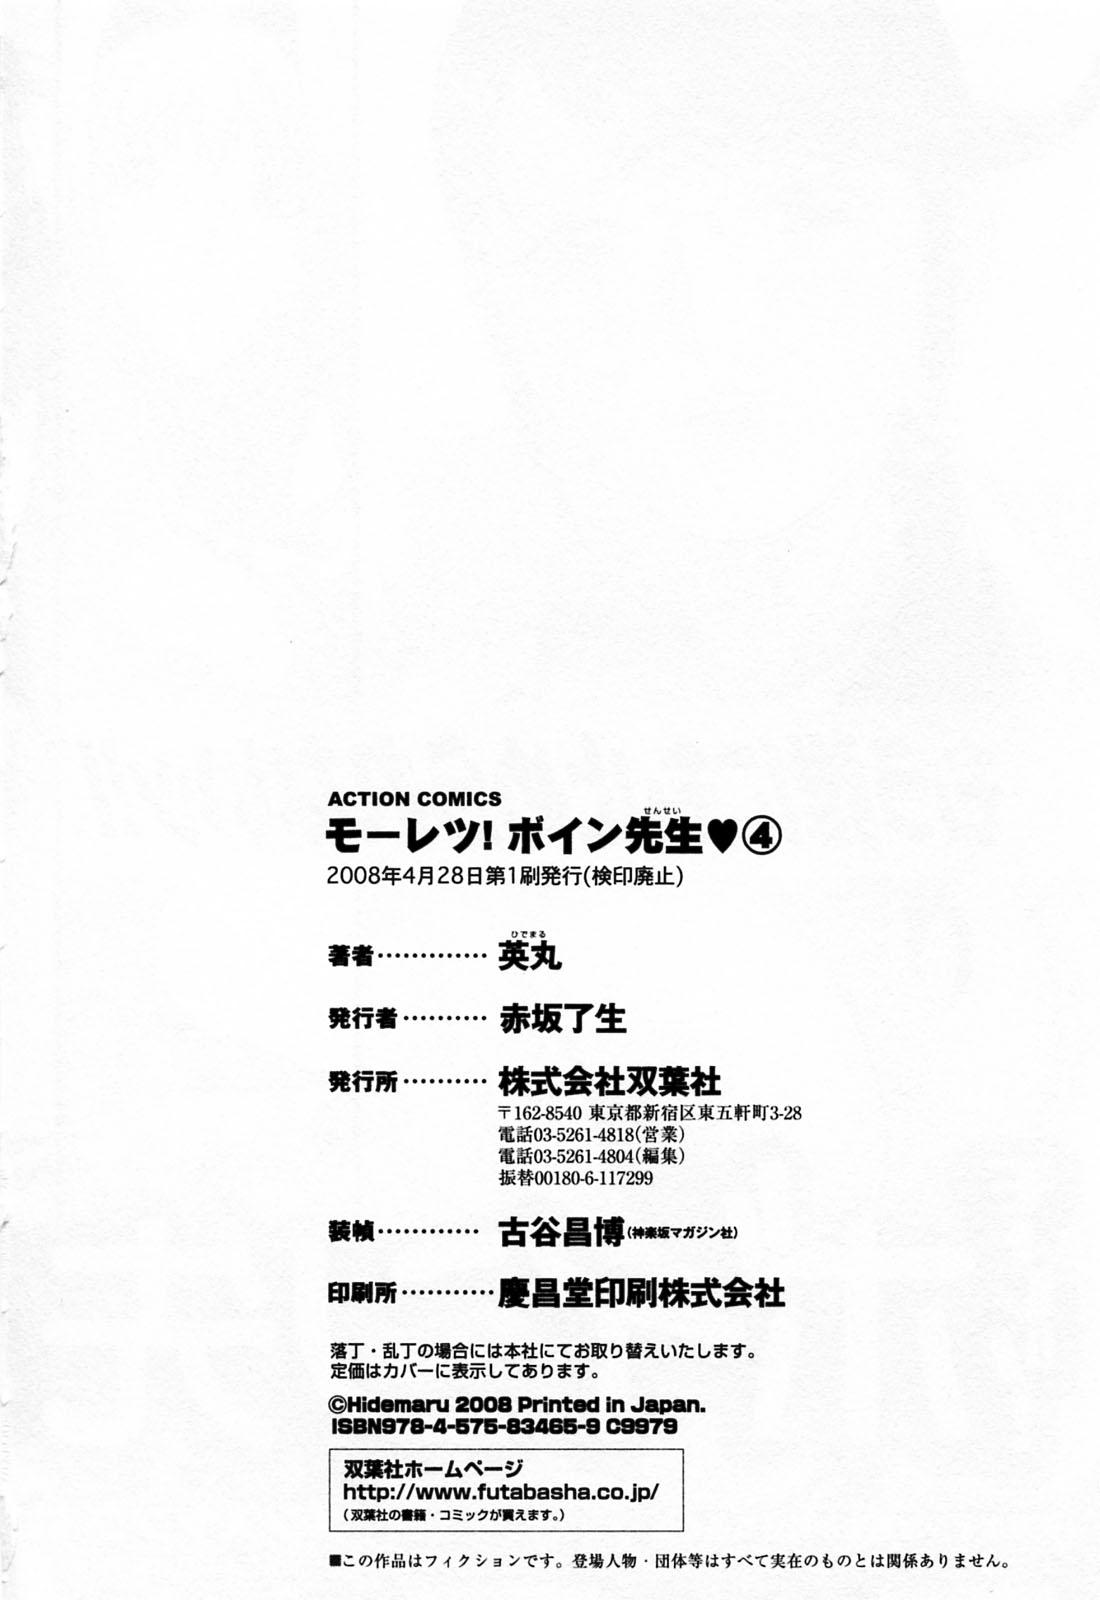 [Hidemaru] Mo-Retsu! Boin Sensei (Boing Boing Teacher) Vol.4 page 198 full